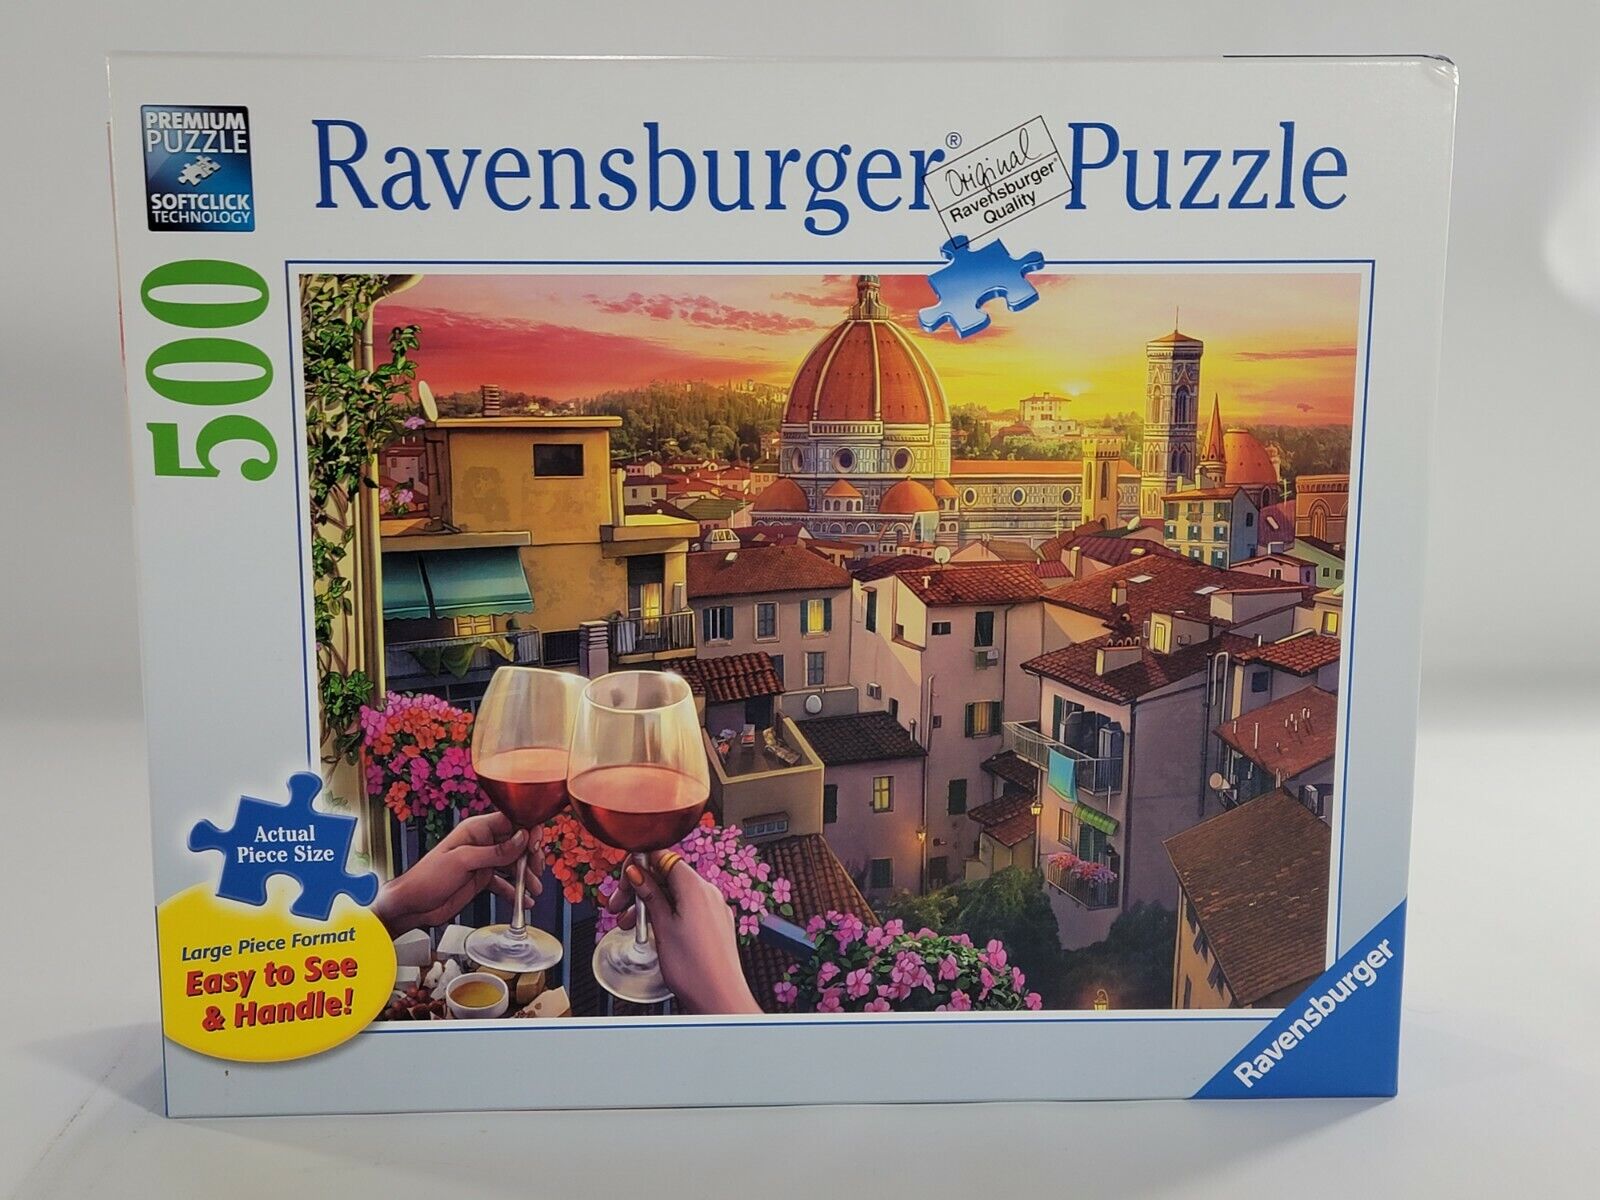 Ravensburger 500 Large Piece Format Puzzle 